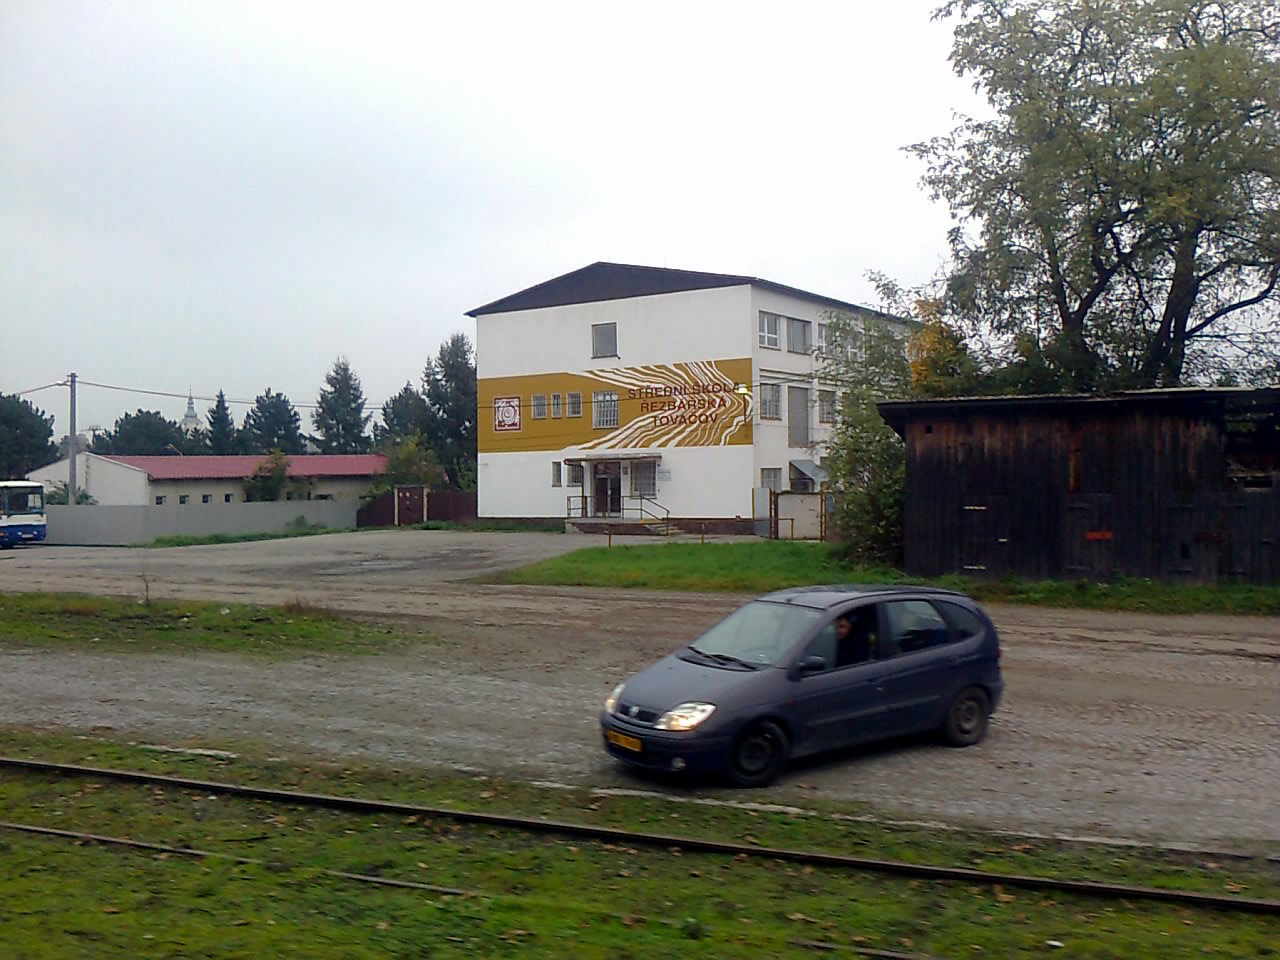 Stedn kola ezbsk v Tovaov, kousek od ndr. budovy